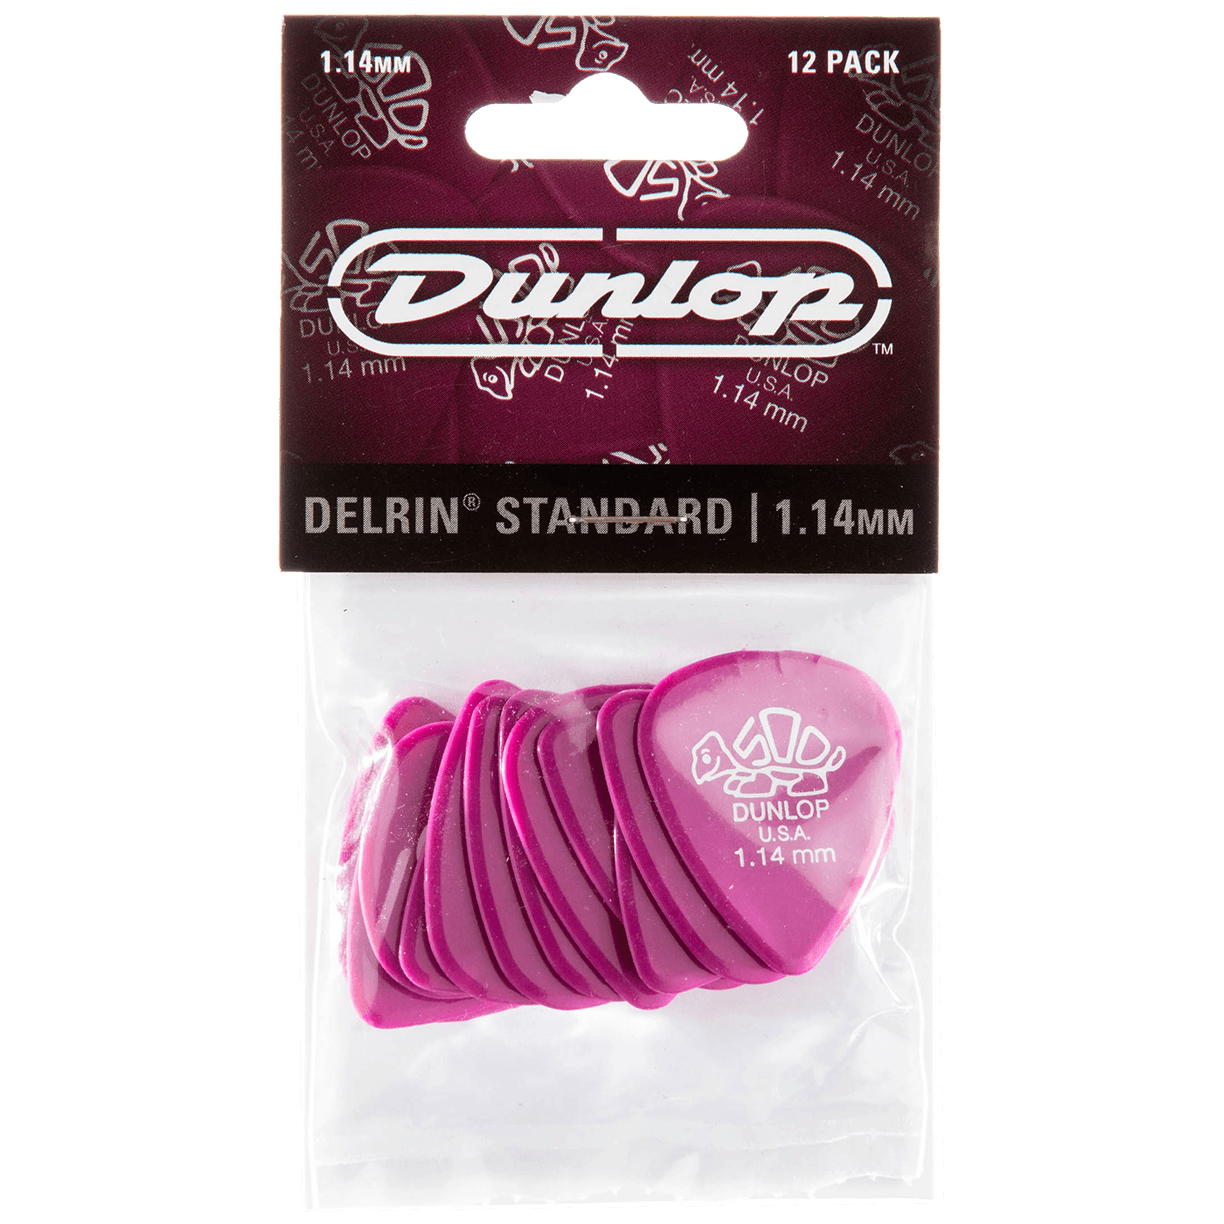 Dunlop Delrin 500 1.14 Player's Pack 12 Stück